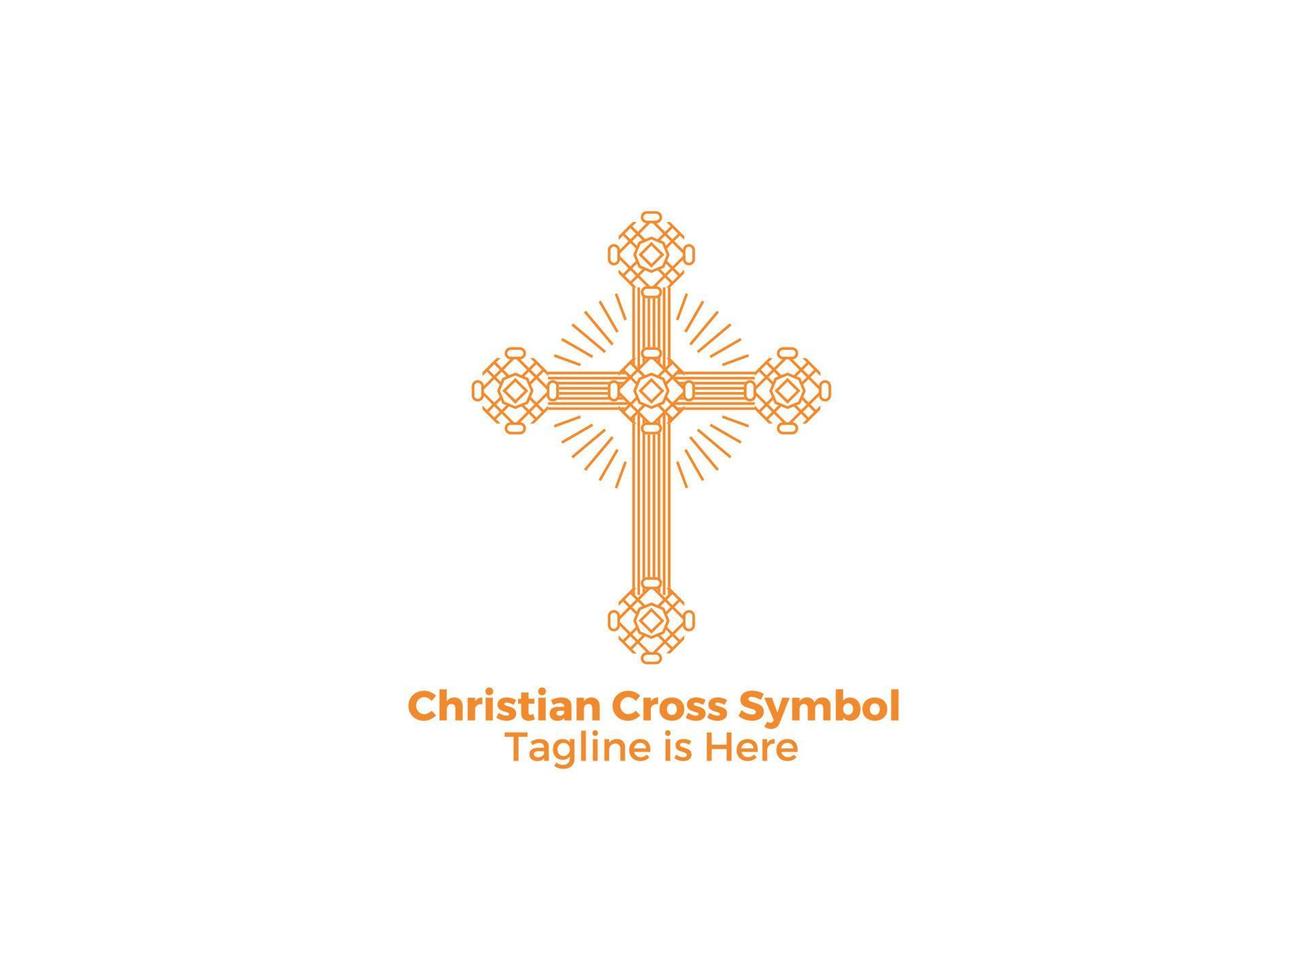 religião ornamental catolicismo cristão cruz ícone isolado no fundo branco vetor livre